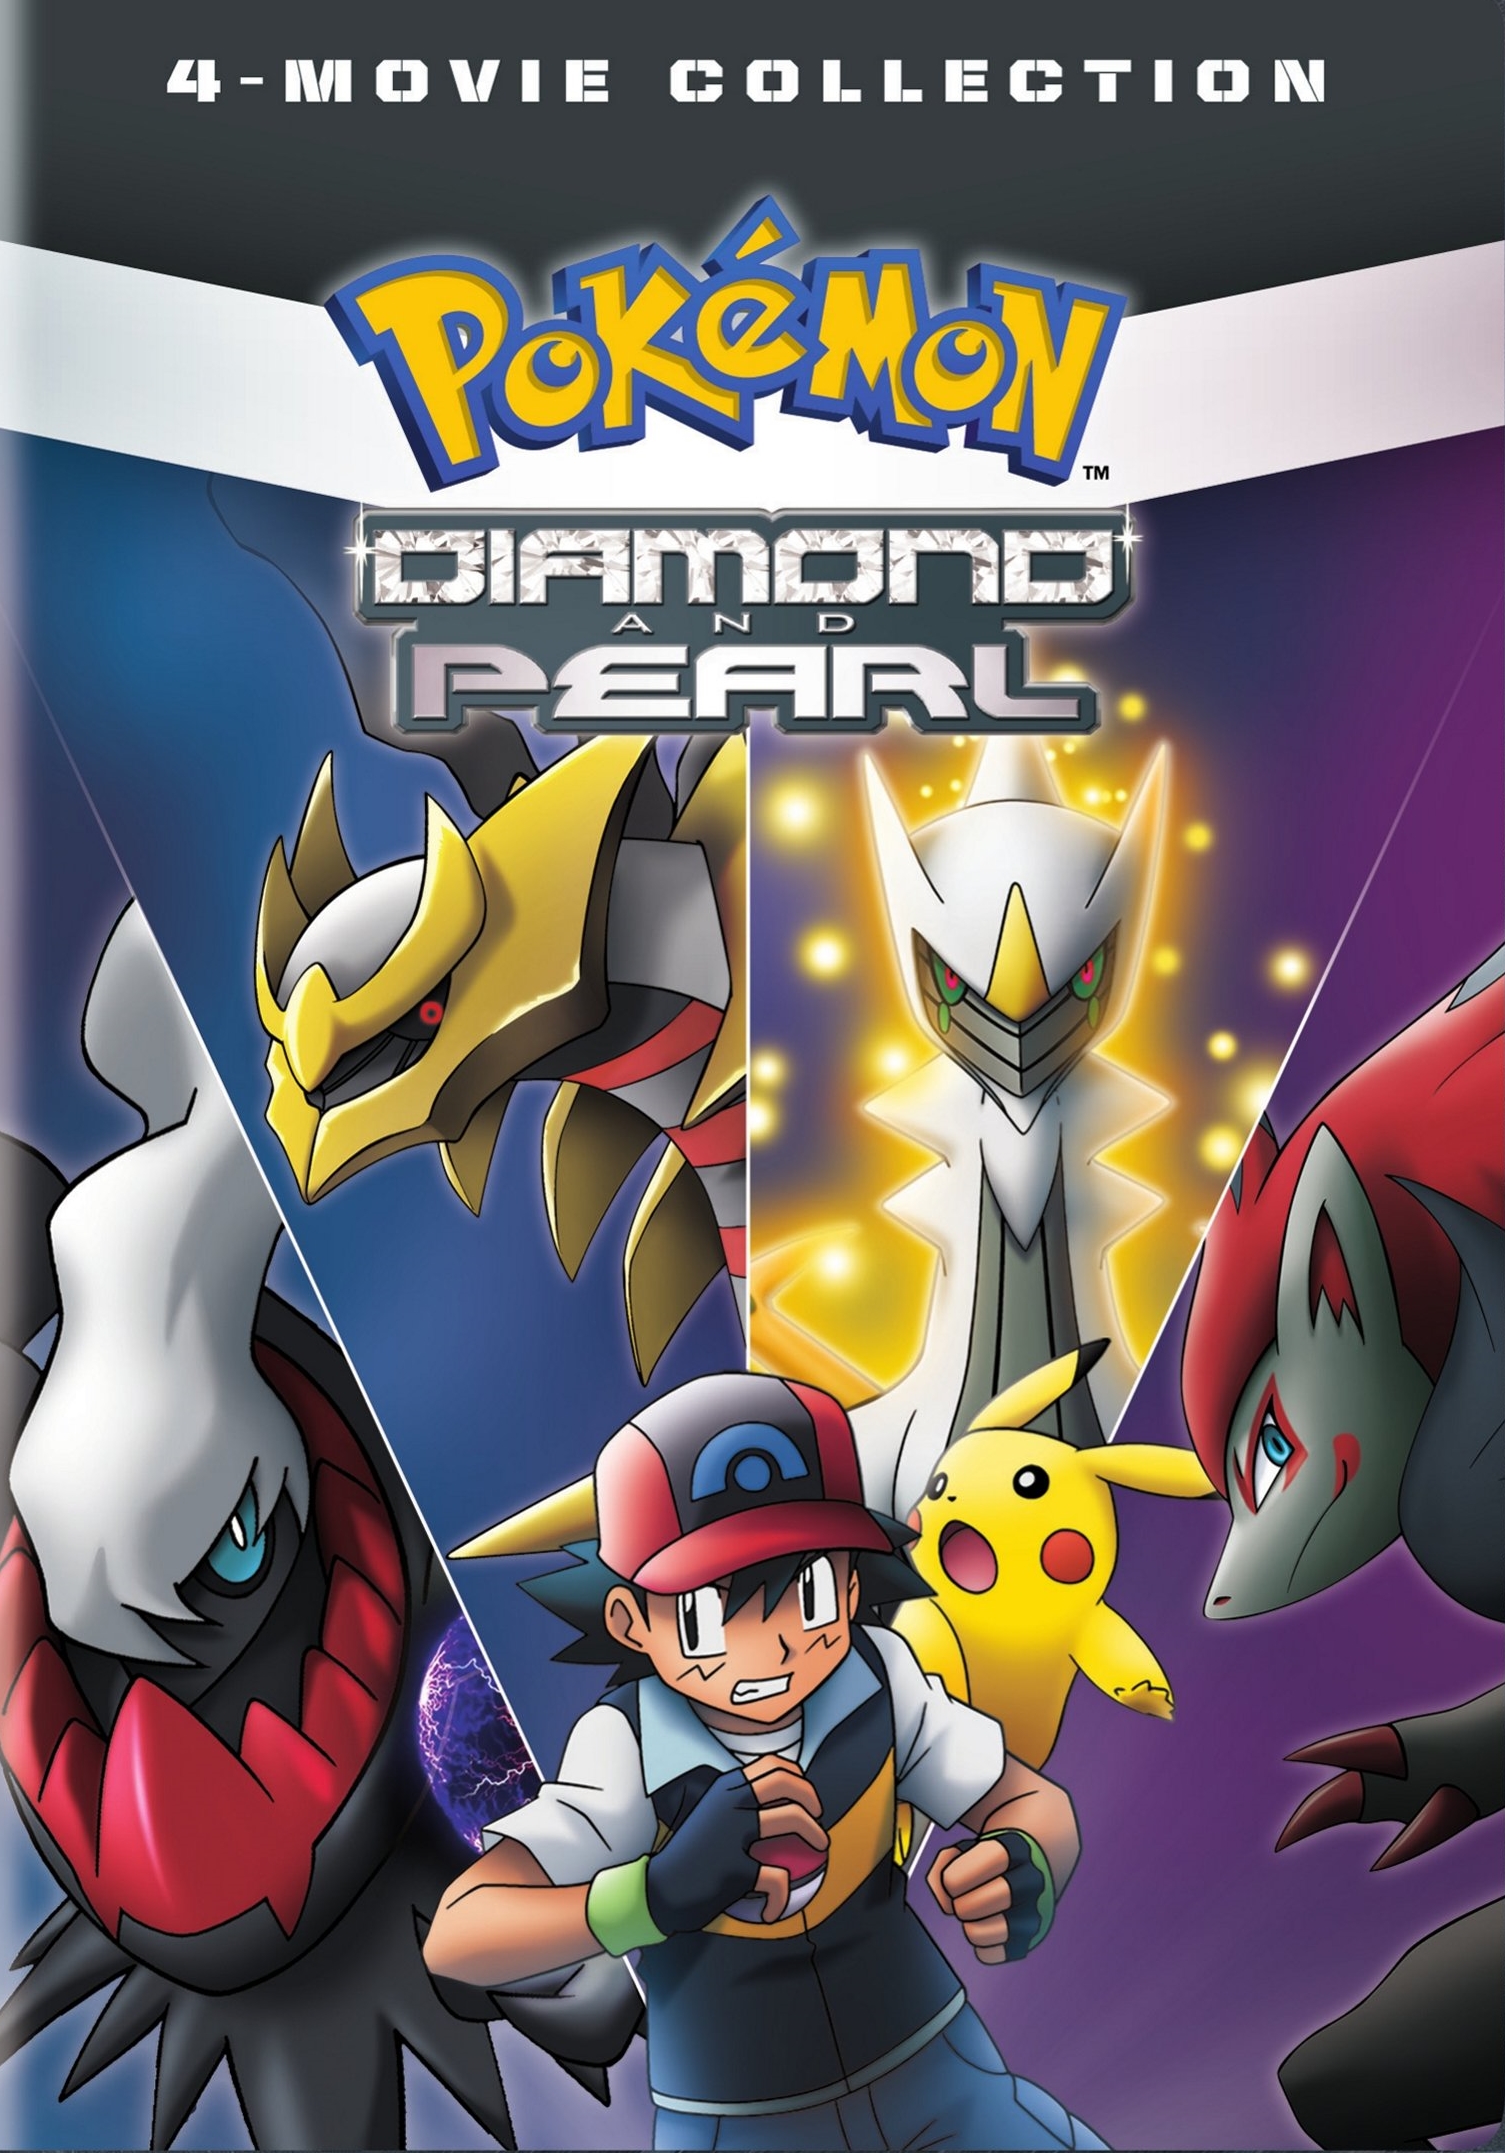 Pokémon The Series: Black & White Rival Destinies Complete Season (DVD)